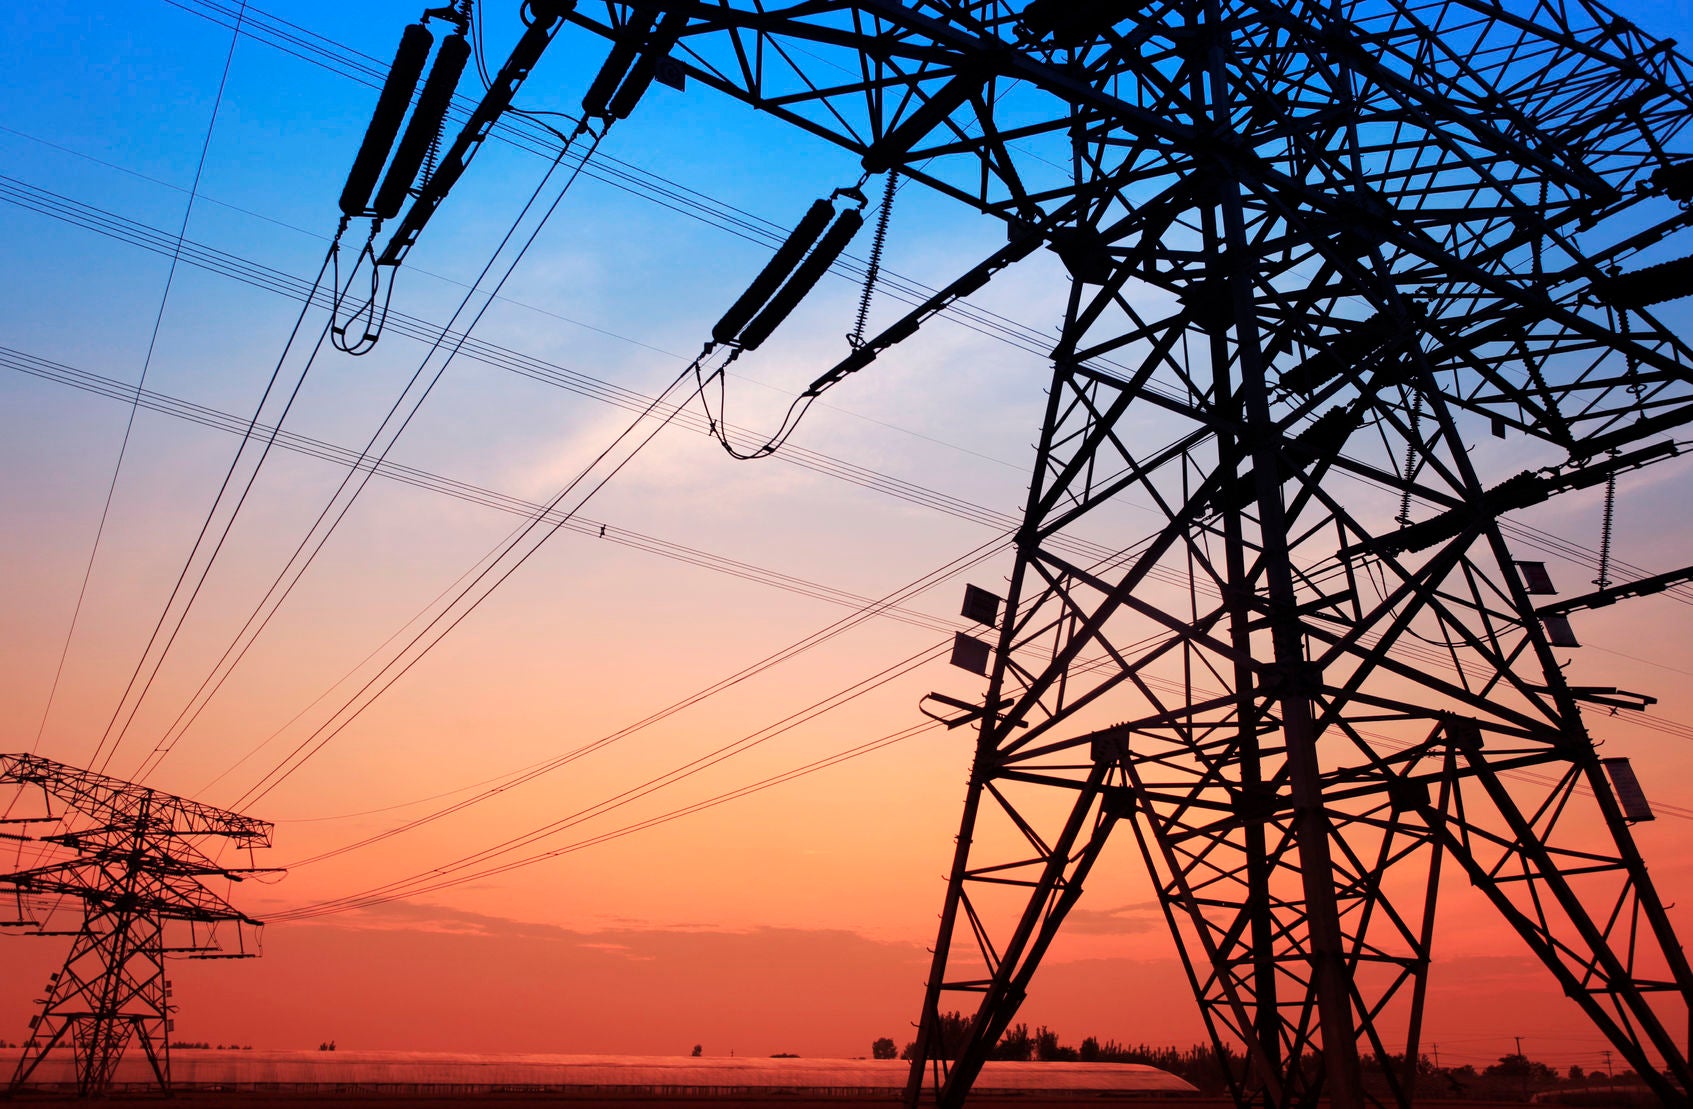 Reforma eléctrica provocará alza de precios y es violatoria del T-MEC; advierte IMCO